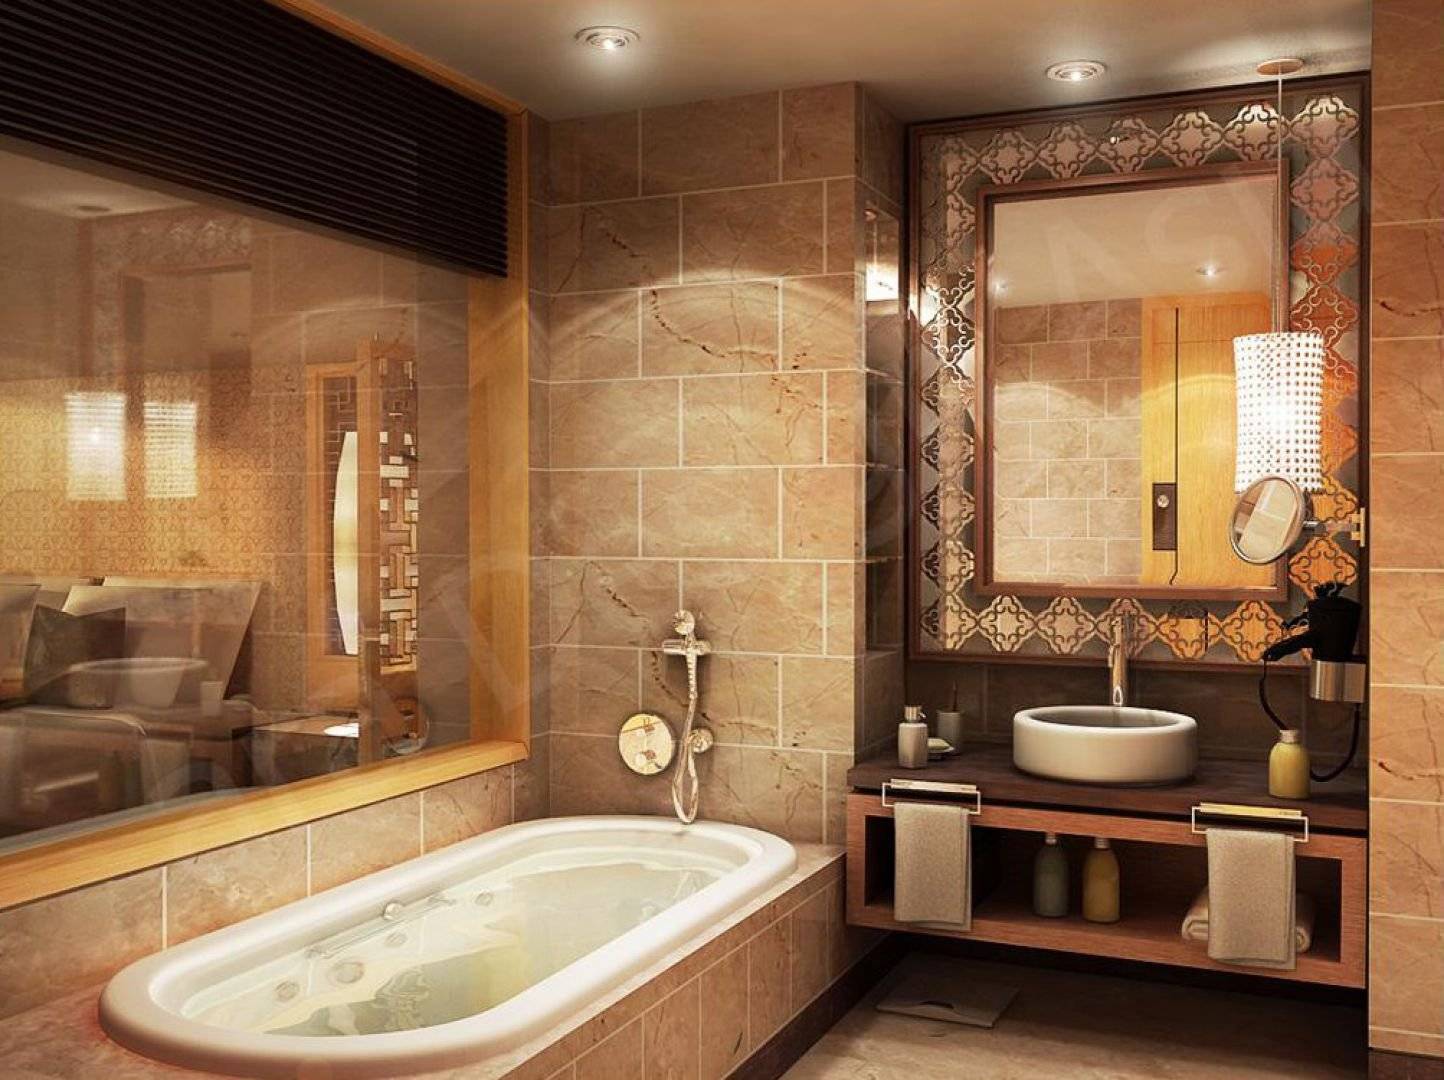 Ремонт ванны, совмещенной с туалетом: этапы, нюансы, дизайн, материалы | строй легко